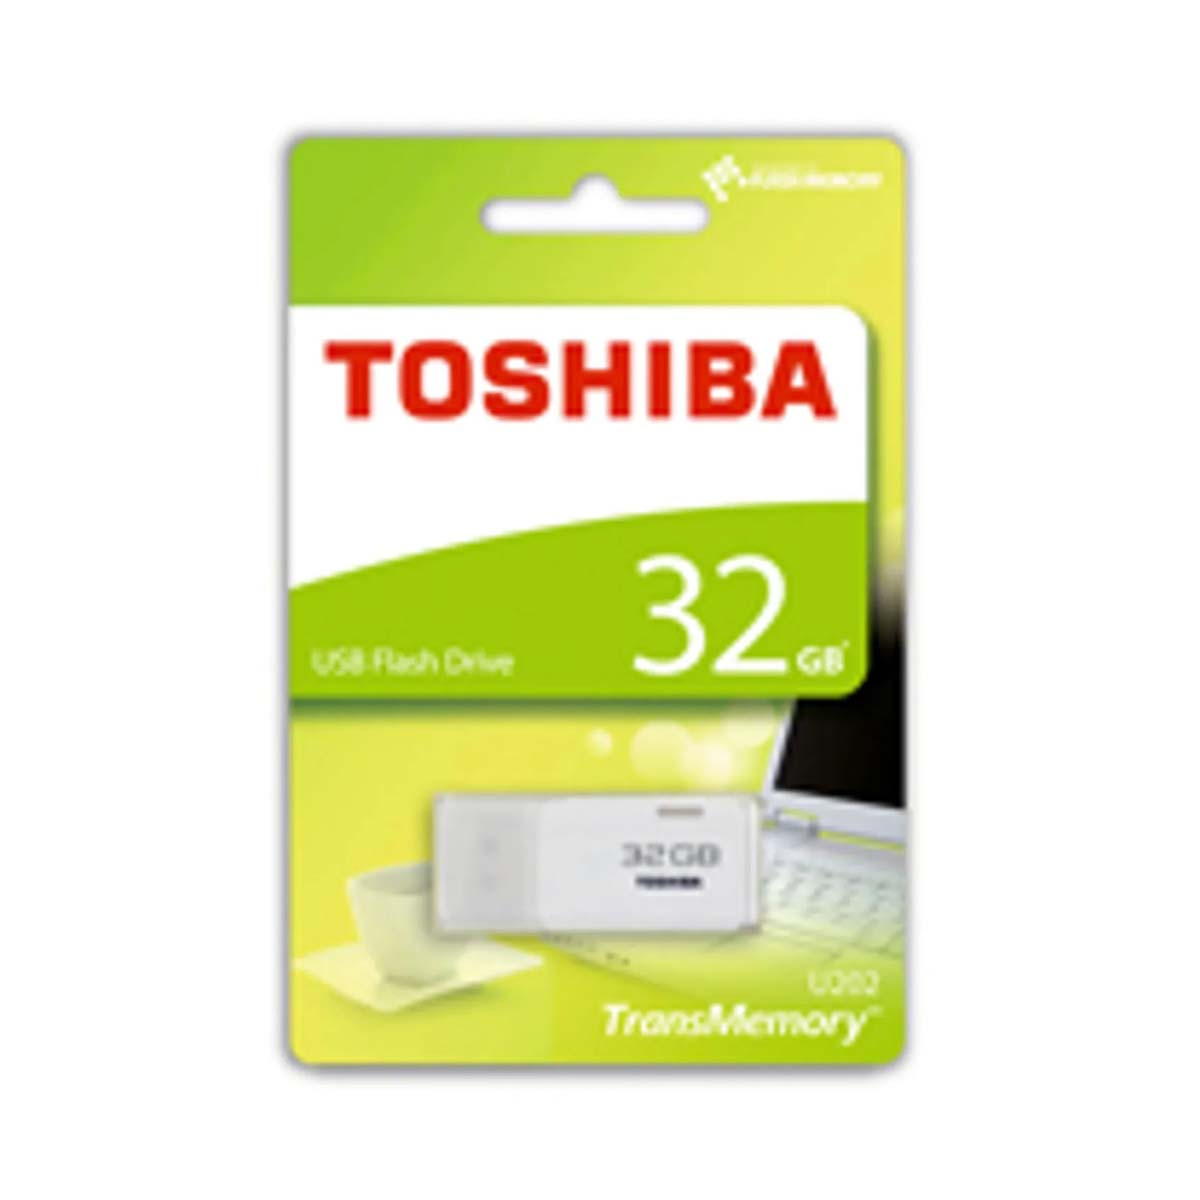 TOSHIBA 32833, Memory GB Stick, 32 USB Stick